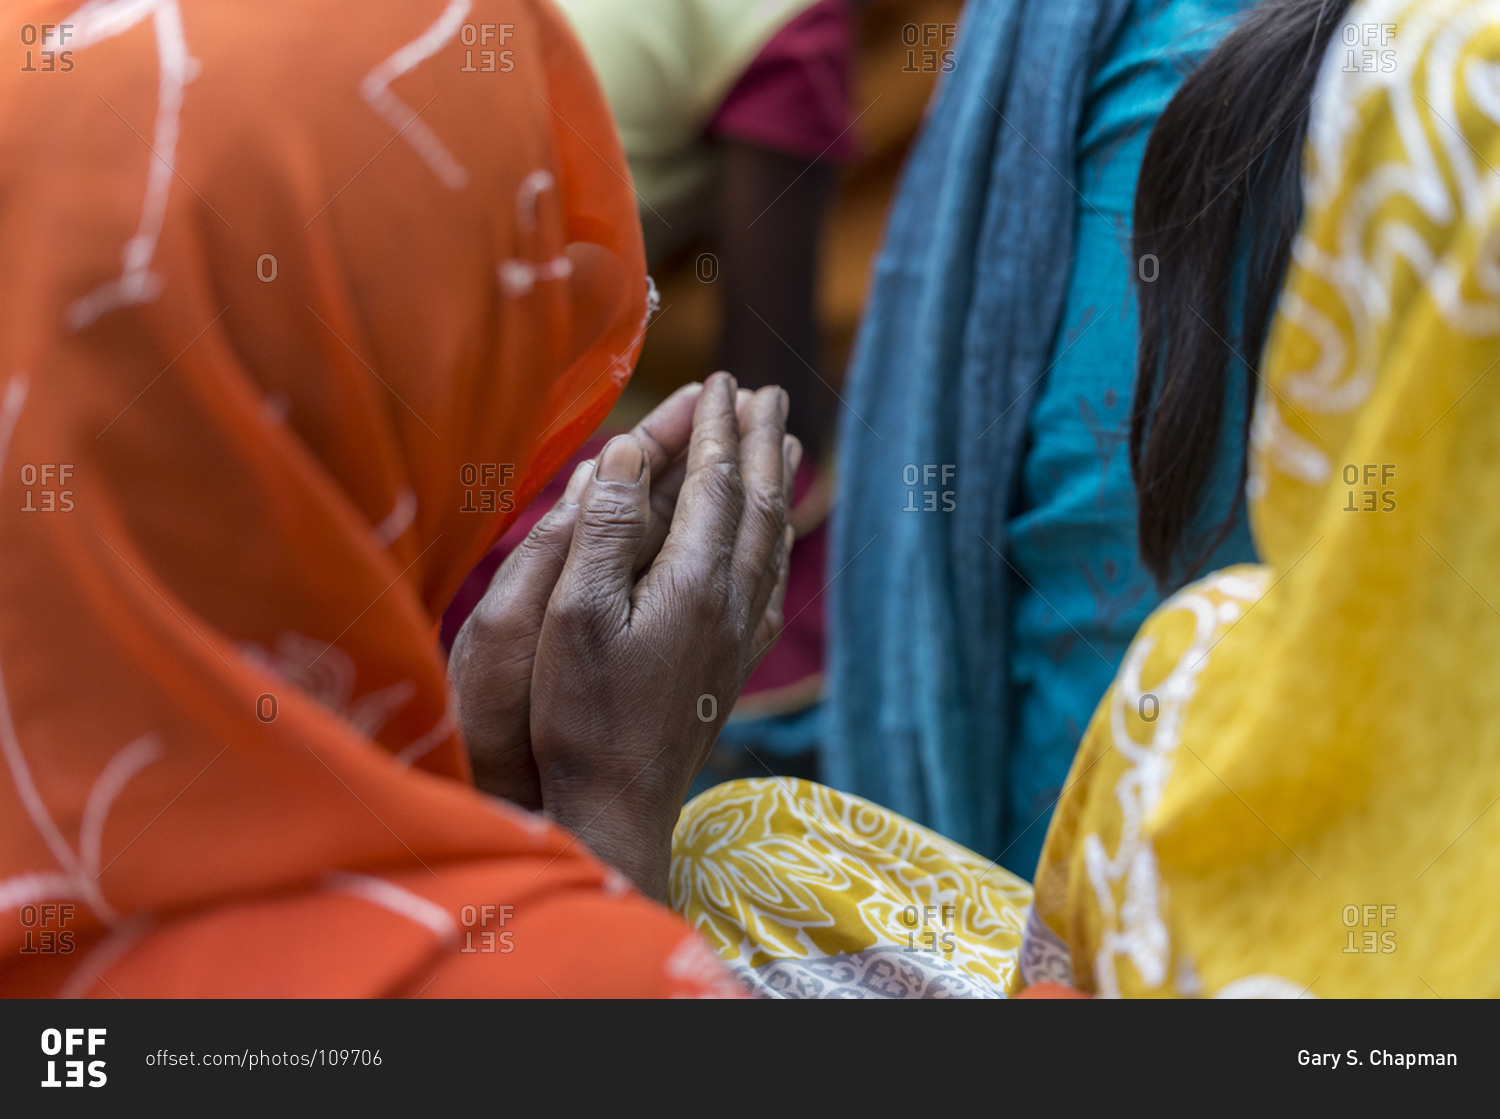 Christian women praying in India